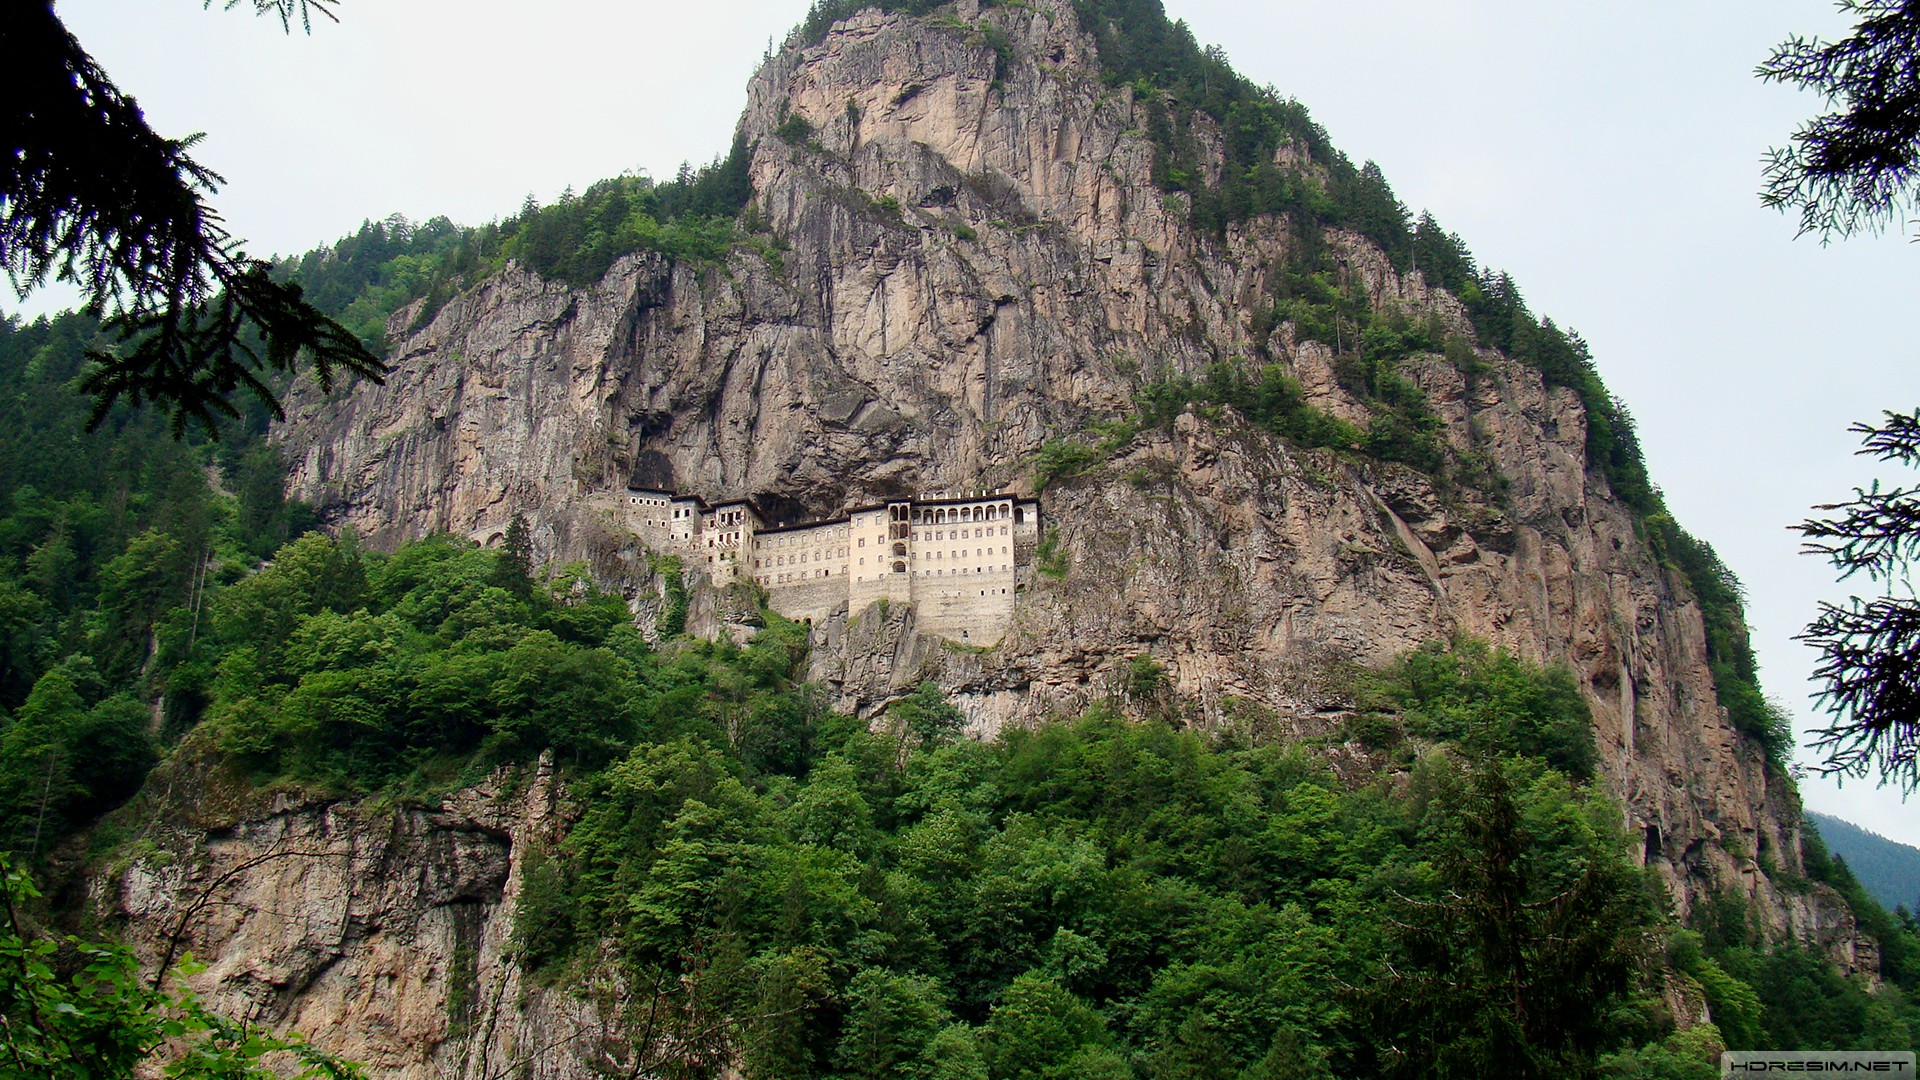 sümela manastırı,trabzon,manastır,kayalık,orman